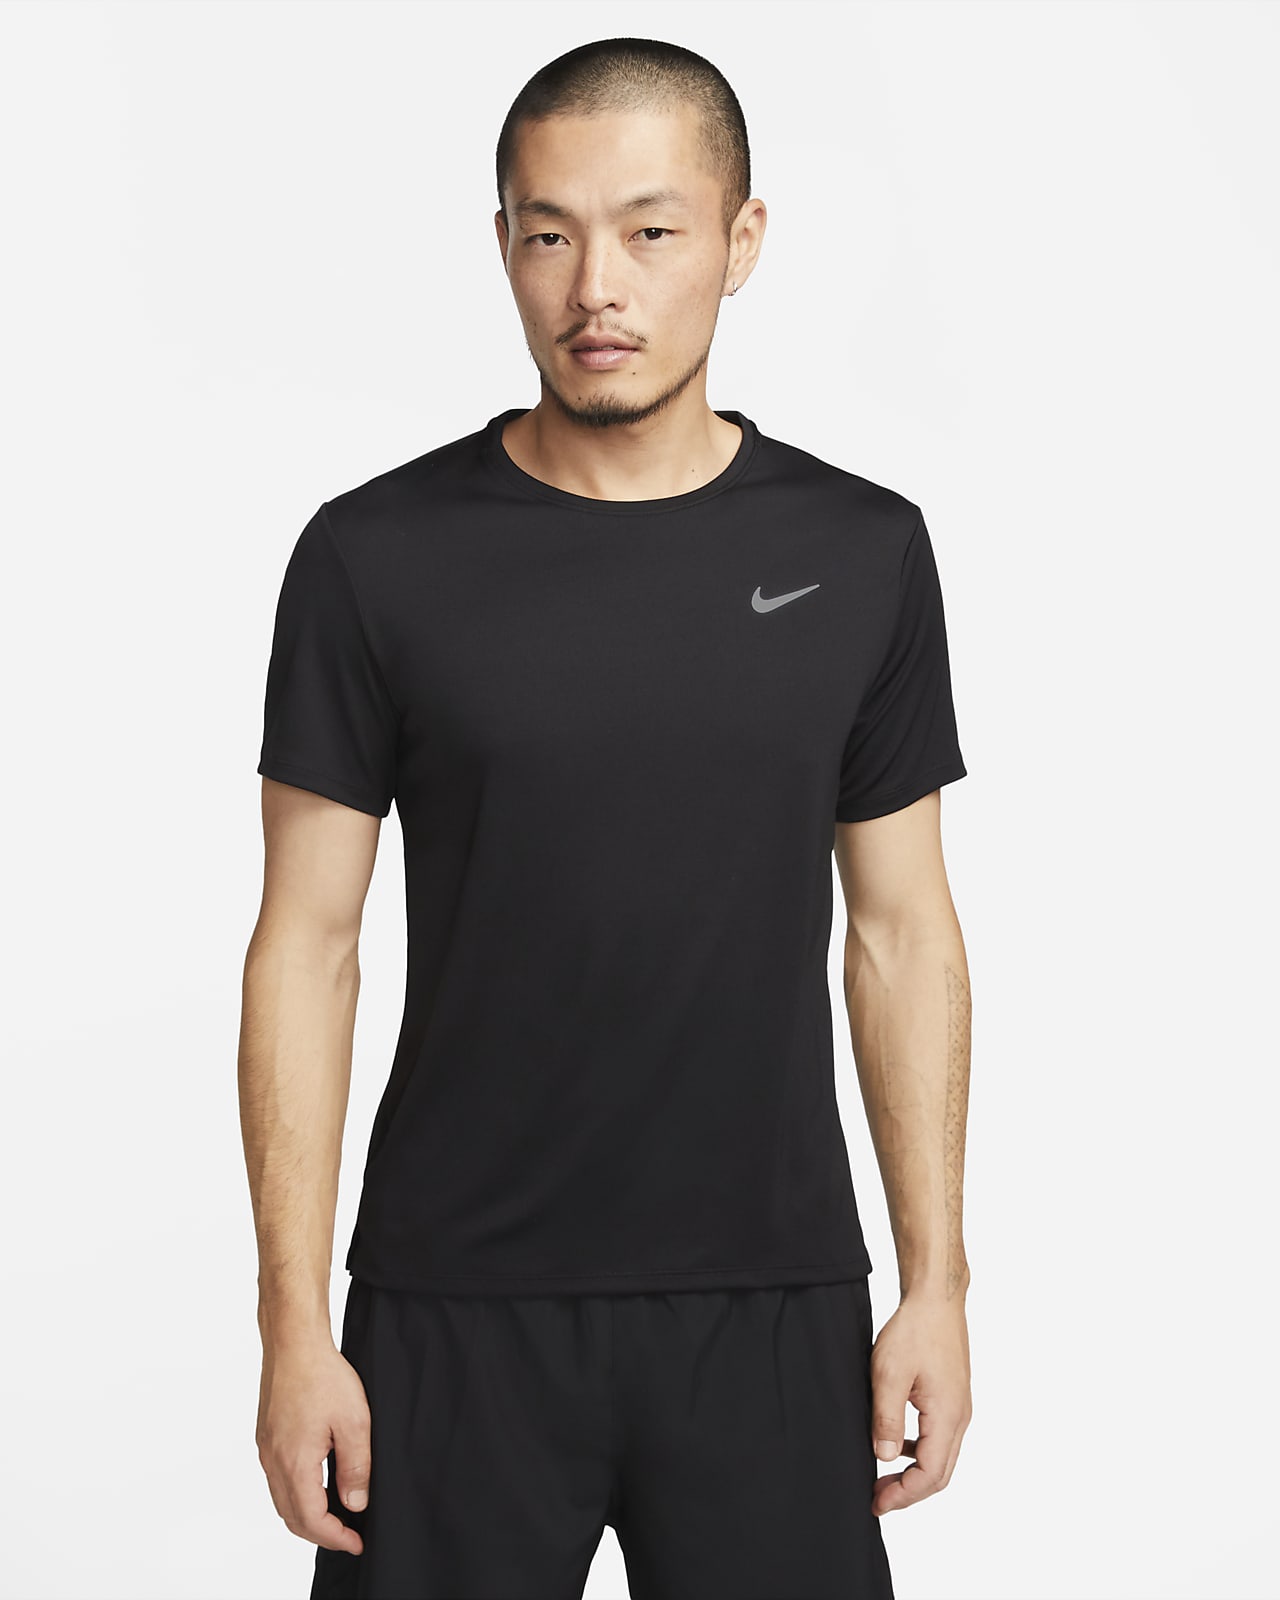 เสื้อวิ่งแขนสั้นผู้ชาย Nike Dri-FIT UV Miler